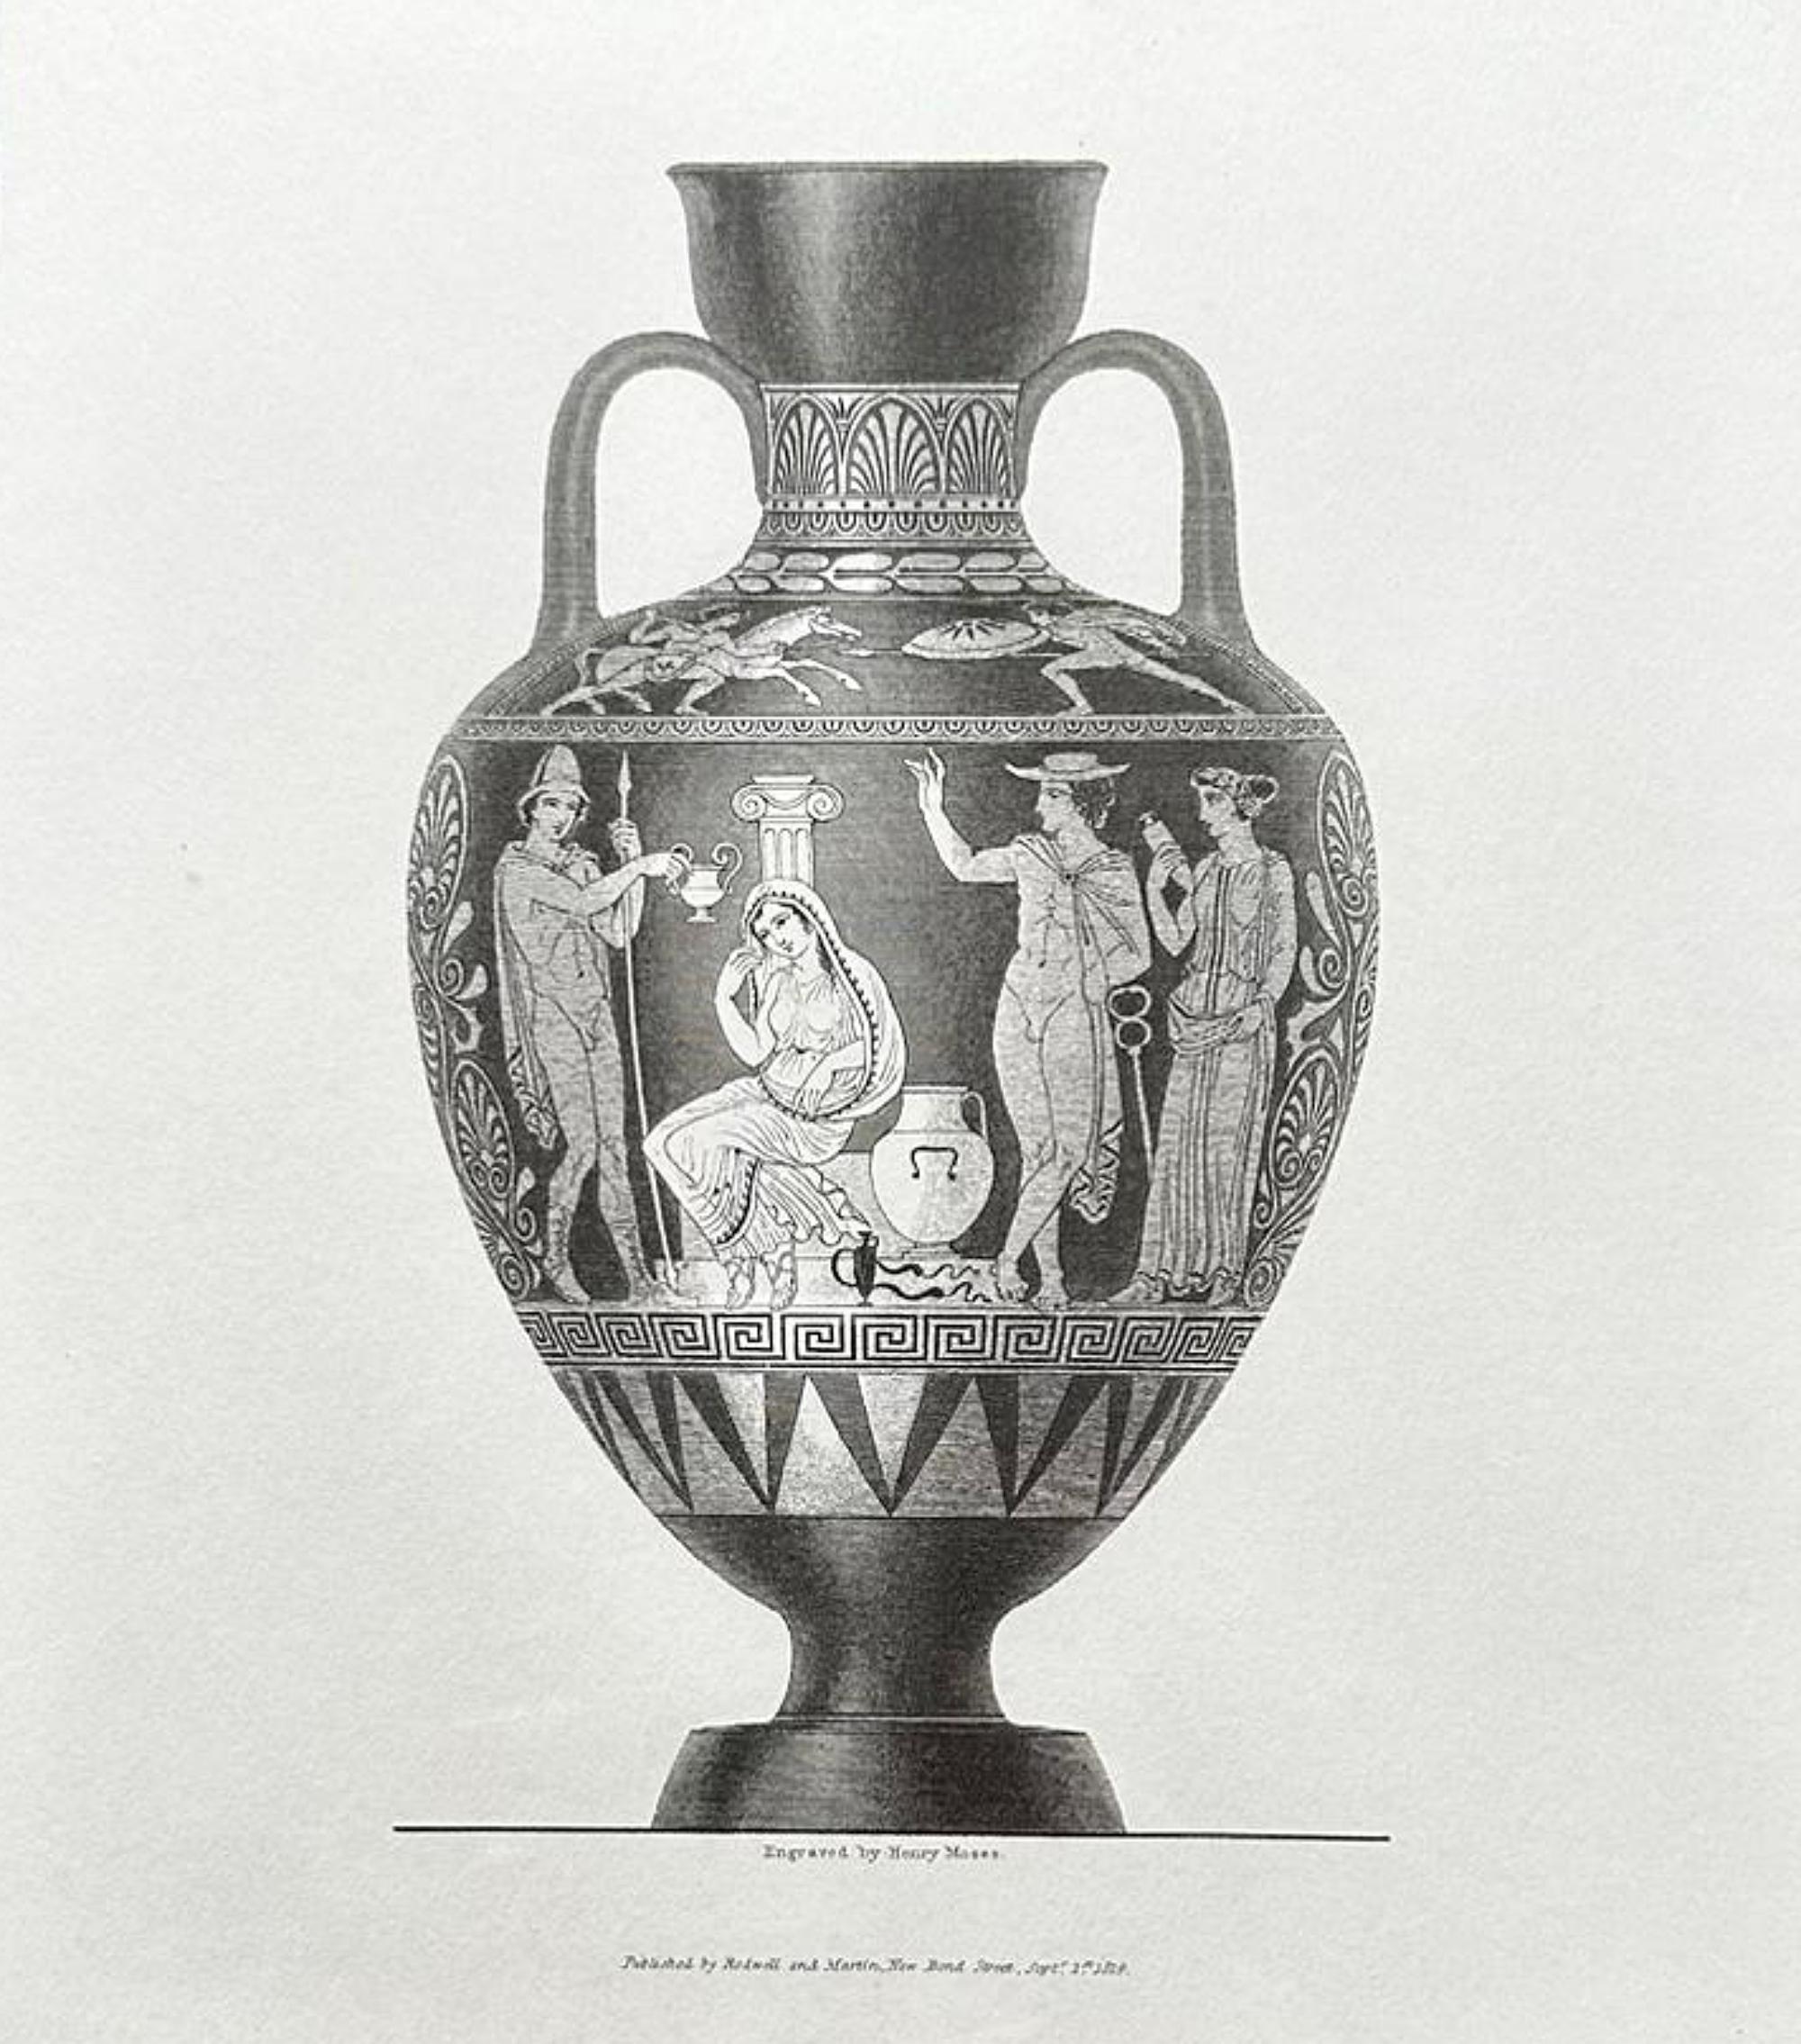 Ensemble de 4 peintures (gravures) de vases grecs du 20ème siècle
39cm x 36cm
parfait état, neuf